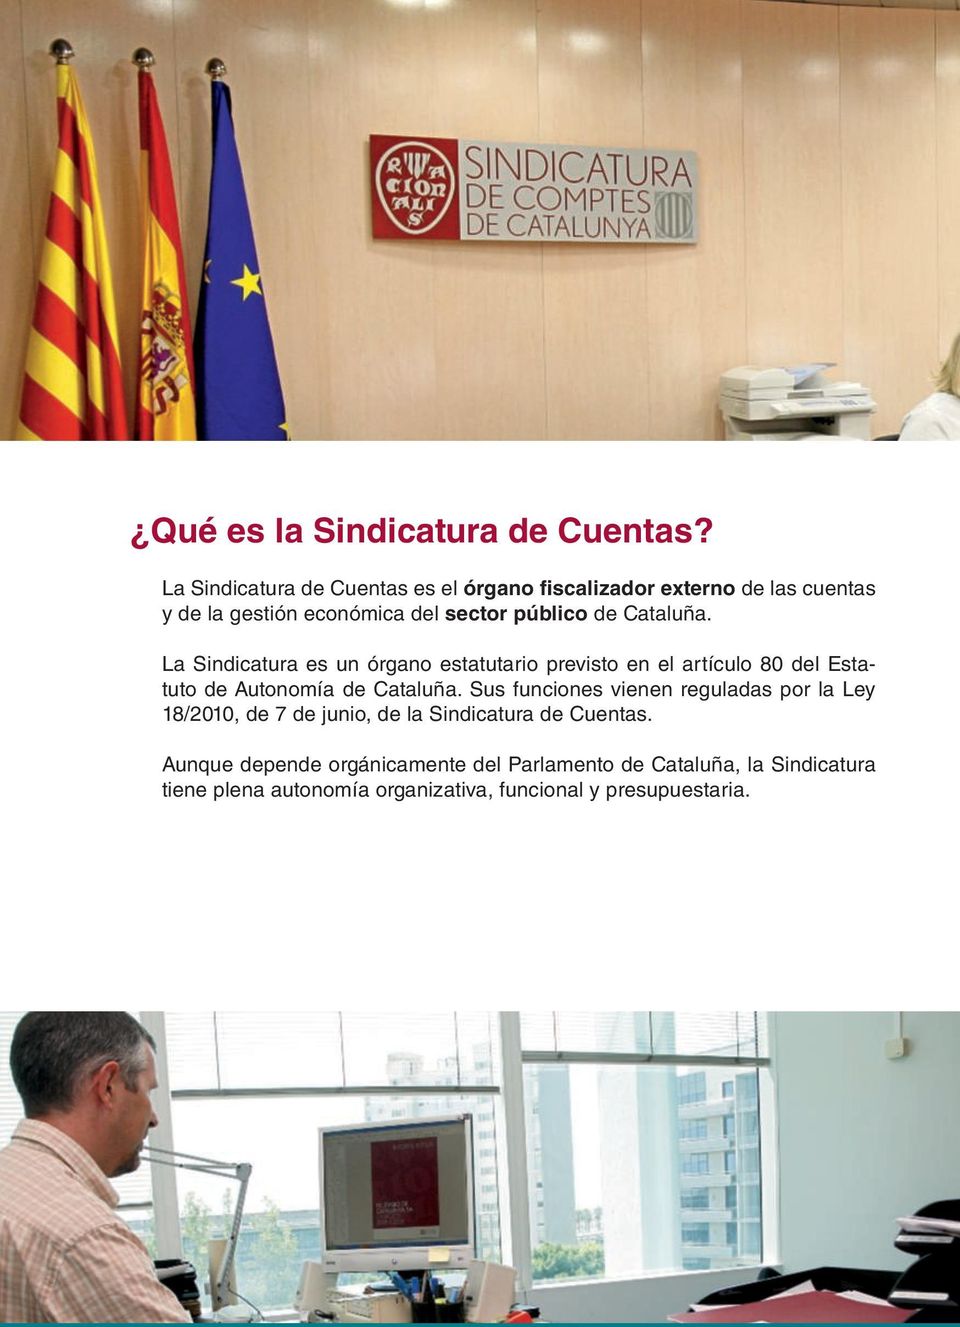 Cataluña. La Sindicatura es un órgano estatutario previsto en el artículo 80 del Estatuto de Autonomía de Cataluña.